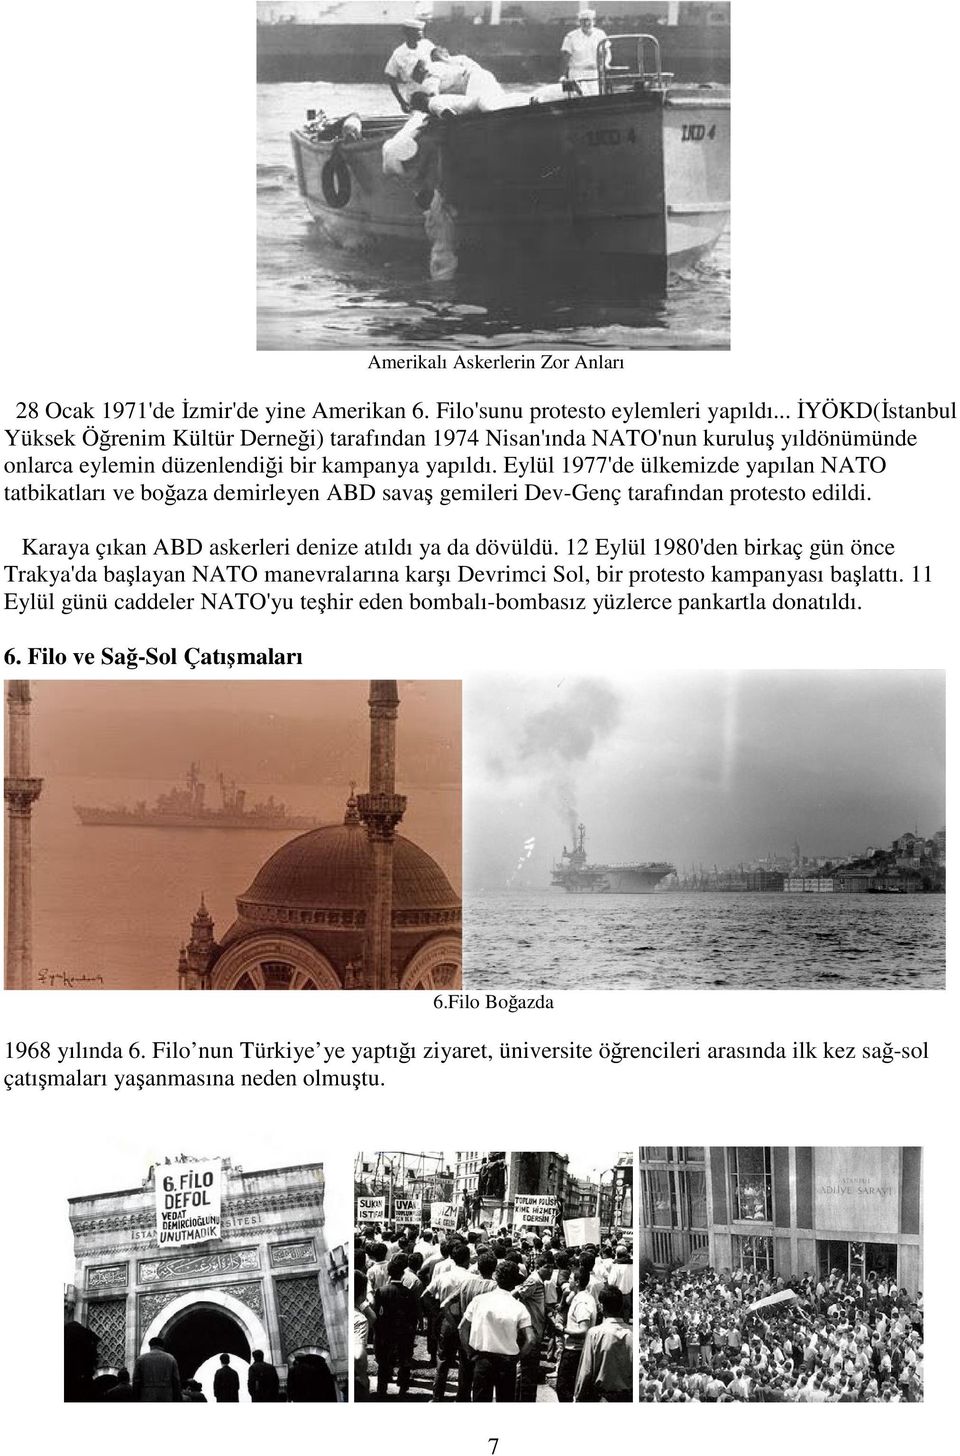 Eylül 1977'de ülkemizde yapılan NATO tatbikatları ve boğaza demirleyen ABD savaş gemileri Dev-Genç tarafından protesto edildi. Karaya çıkan ABD askerleri denize atıldı ya da dövüldü.